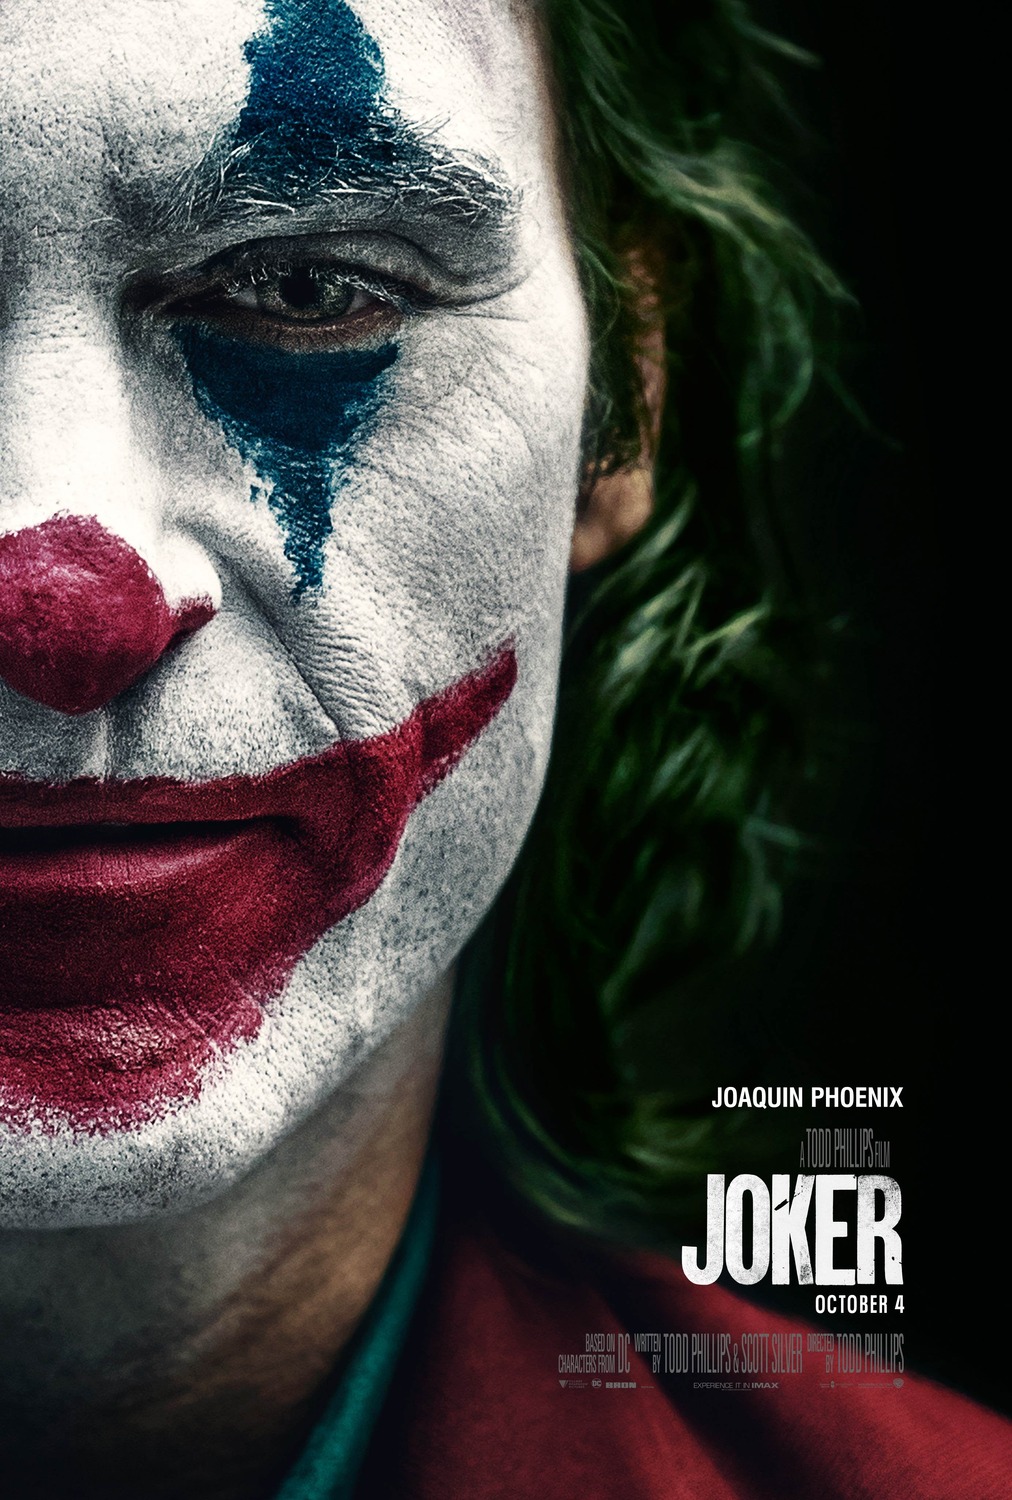 Joker Photo Gallery